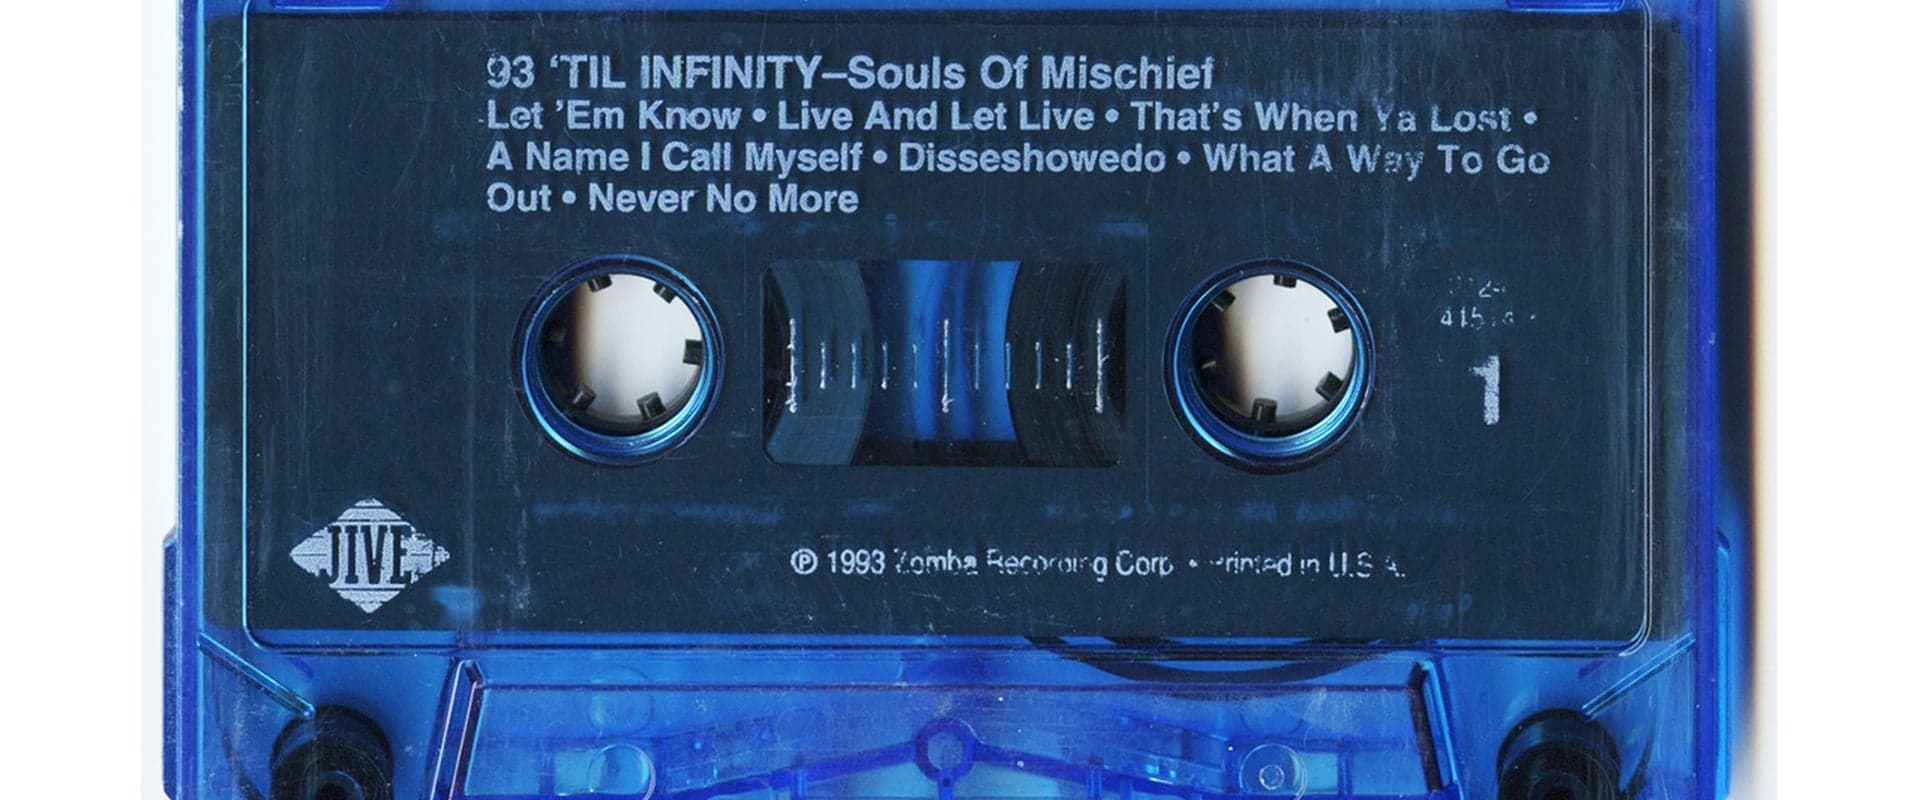 Til Infinity: The Souls of Mischief